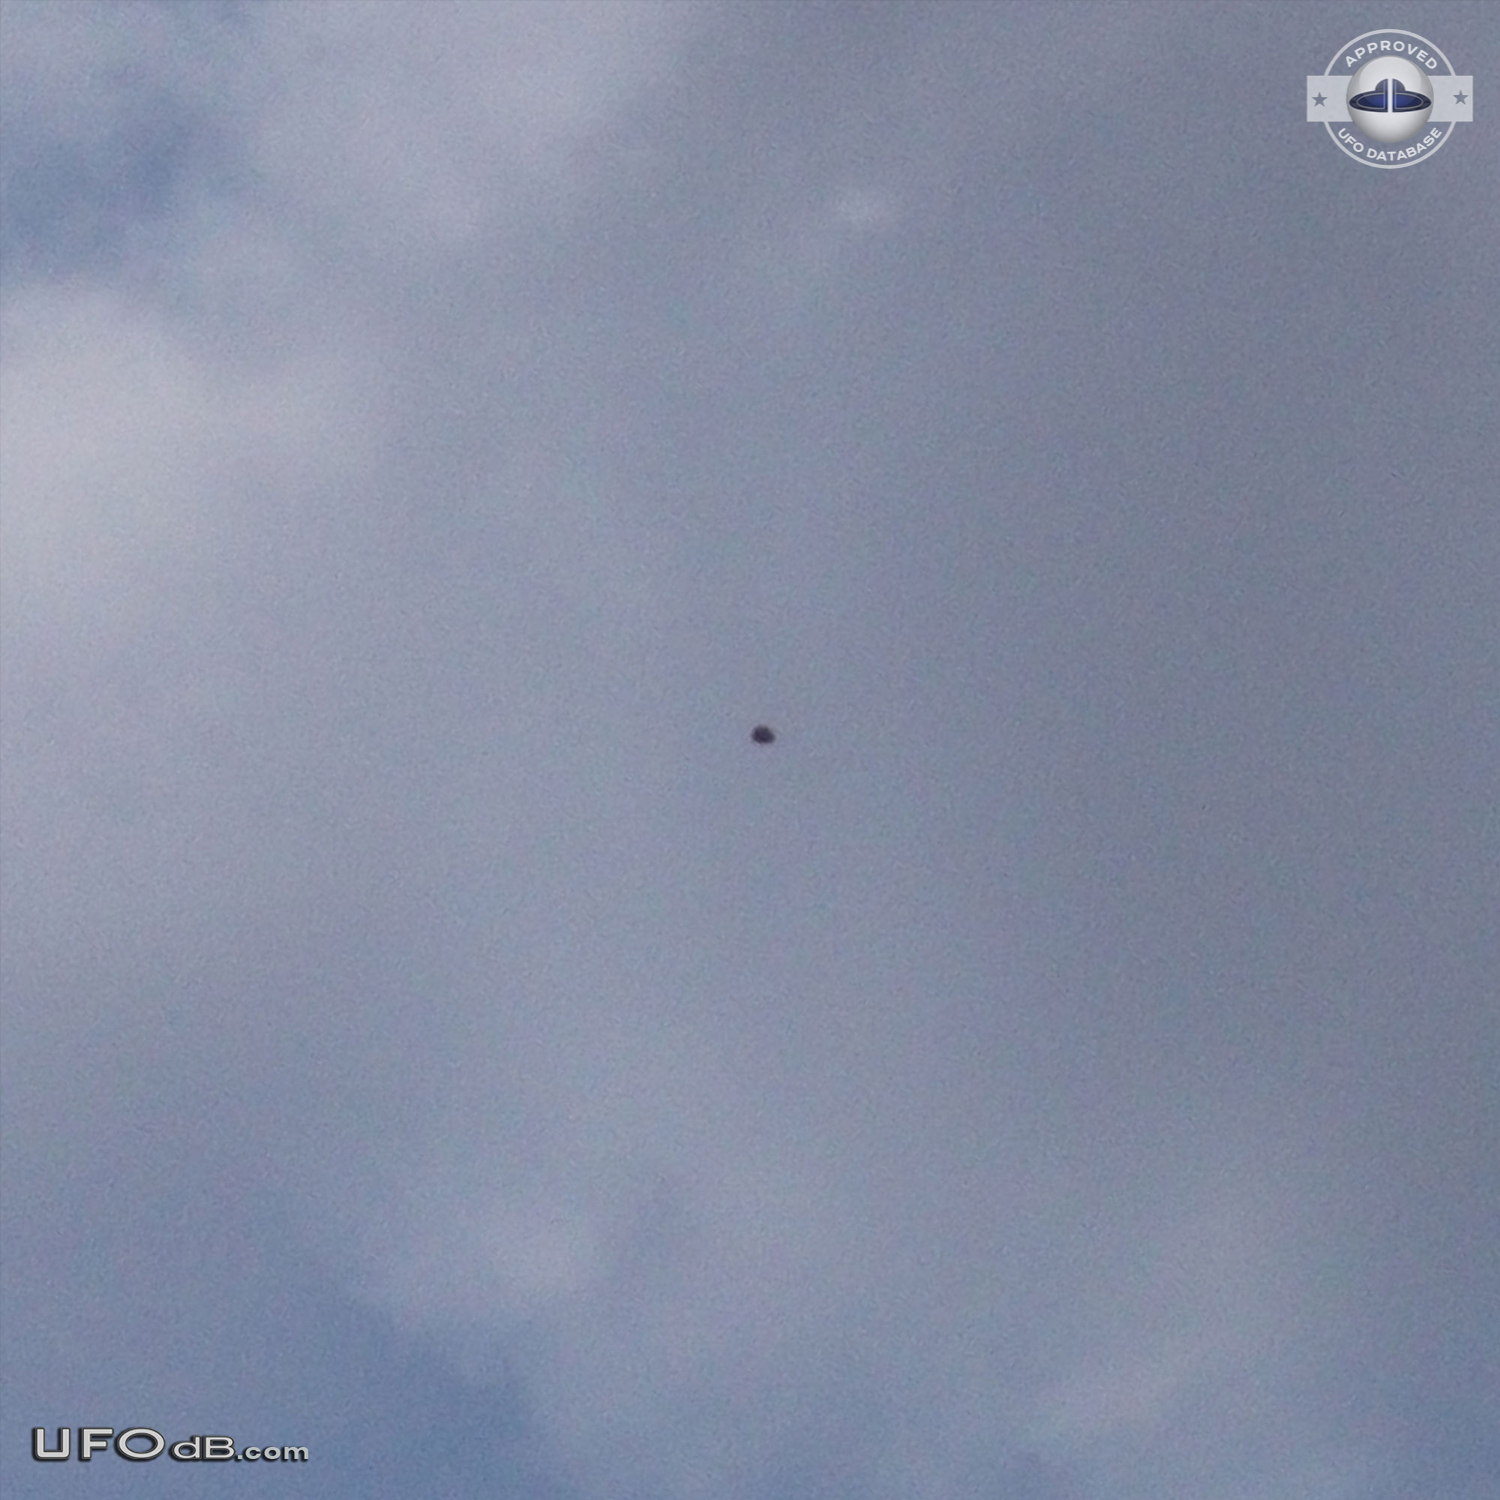 Dark UFO hovering over Rishon LeZion in Center Israel - 2012 UFO Picture #424-1